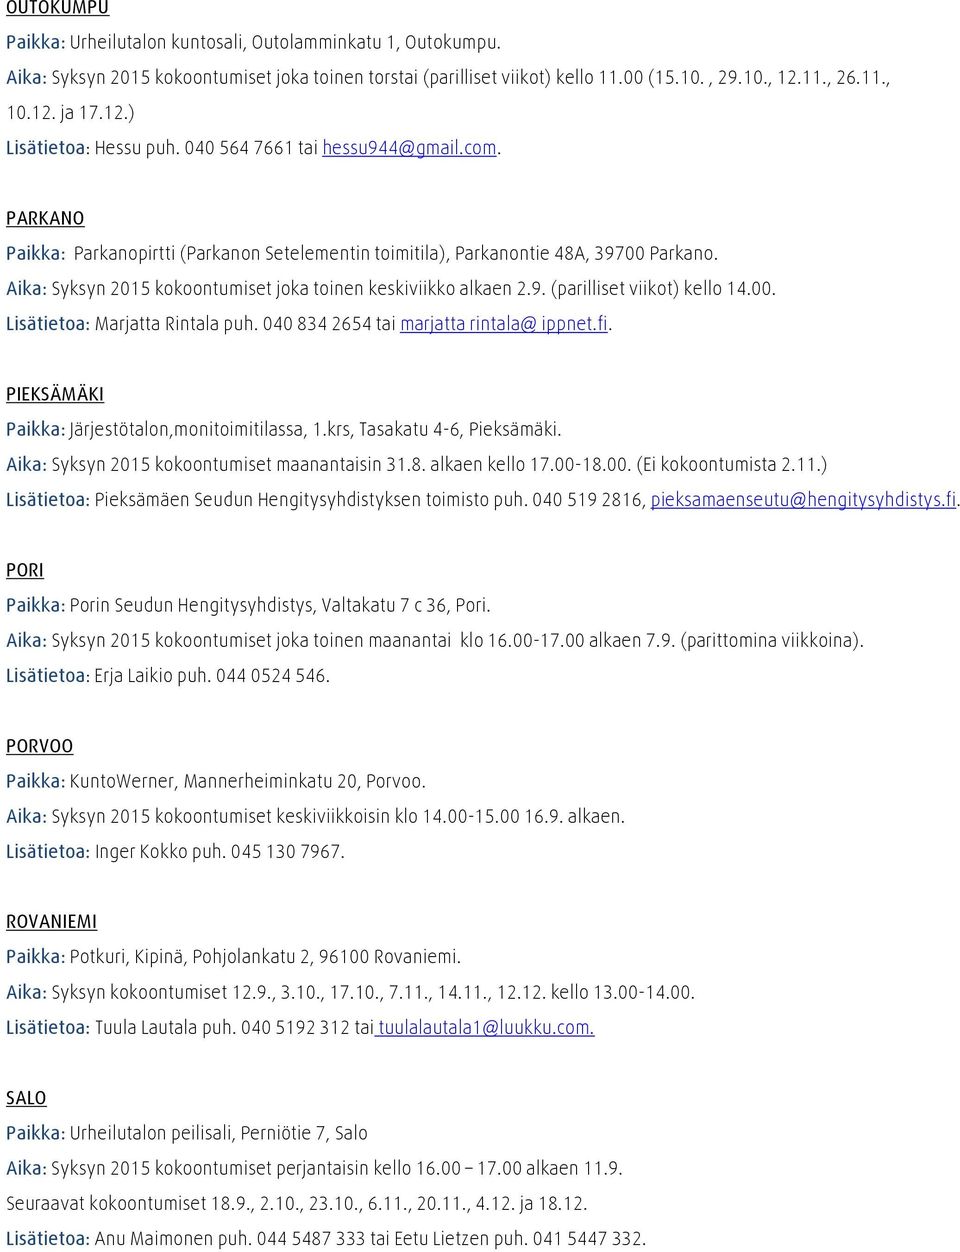 Aika: Syksyn 2015 kokoontumiset joka toinen keskiviikko alkaen 2.9. (parilliset viikot) kello 14.00. Lisätietoa: Marjatta Rintala puh. 0408342654 tai marjatta rintala@ ippnet.fi.